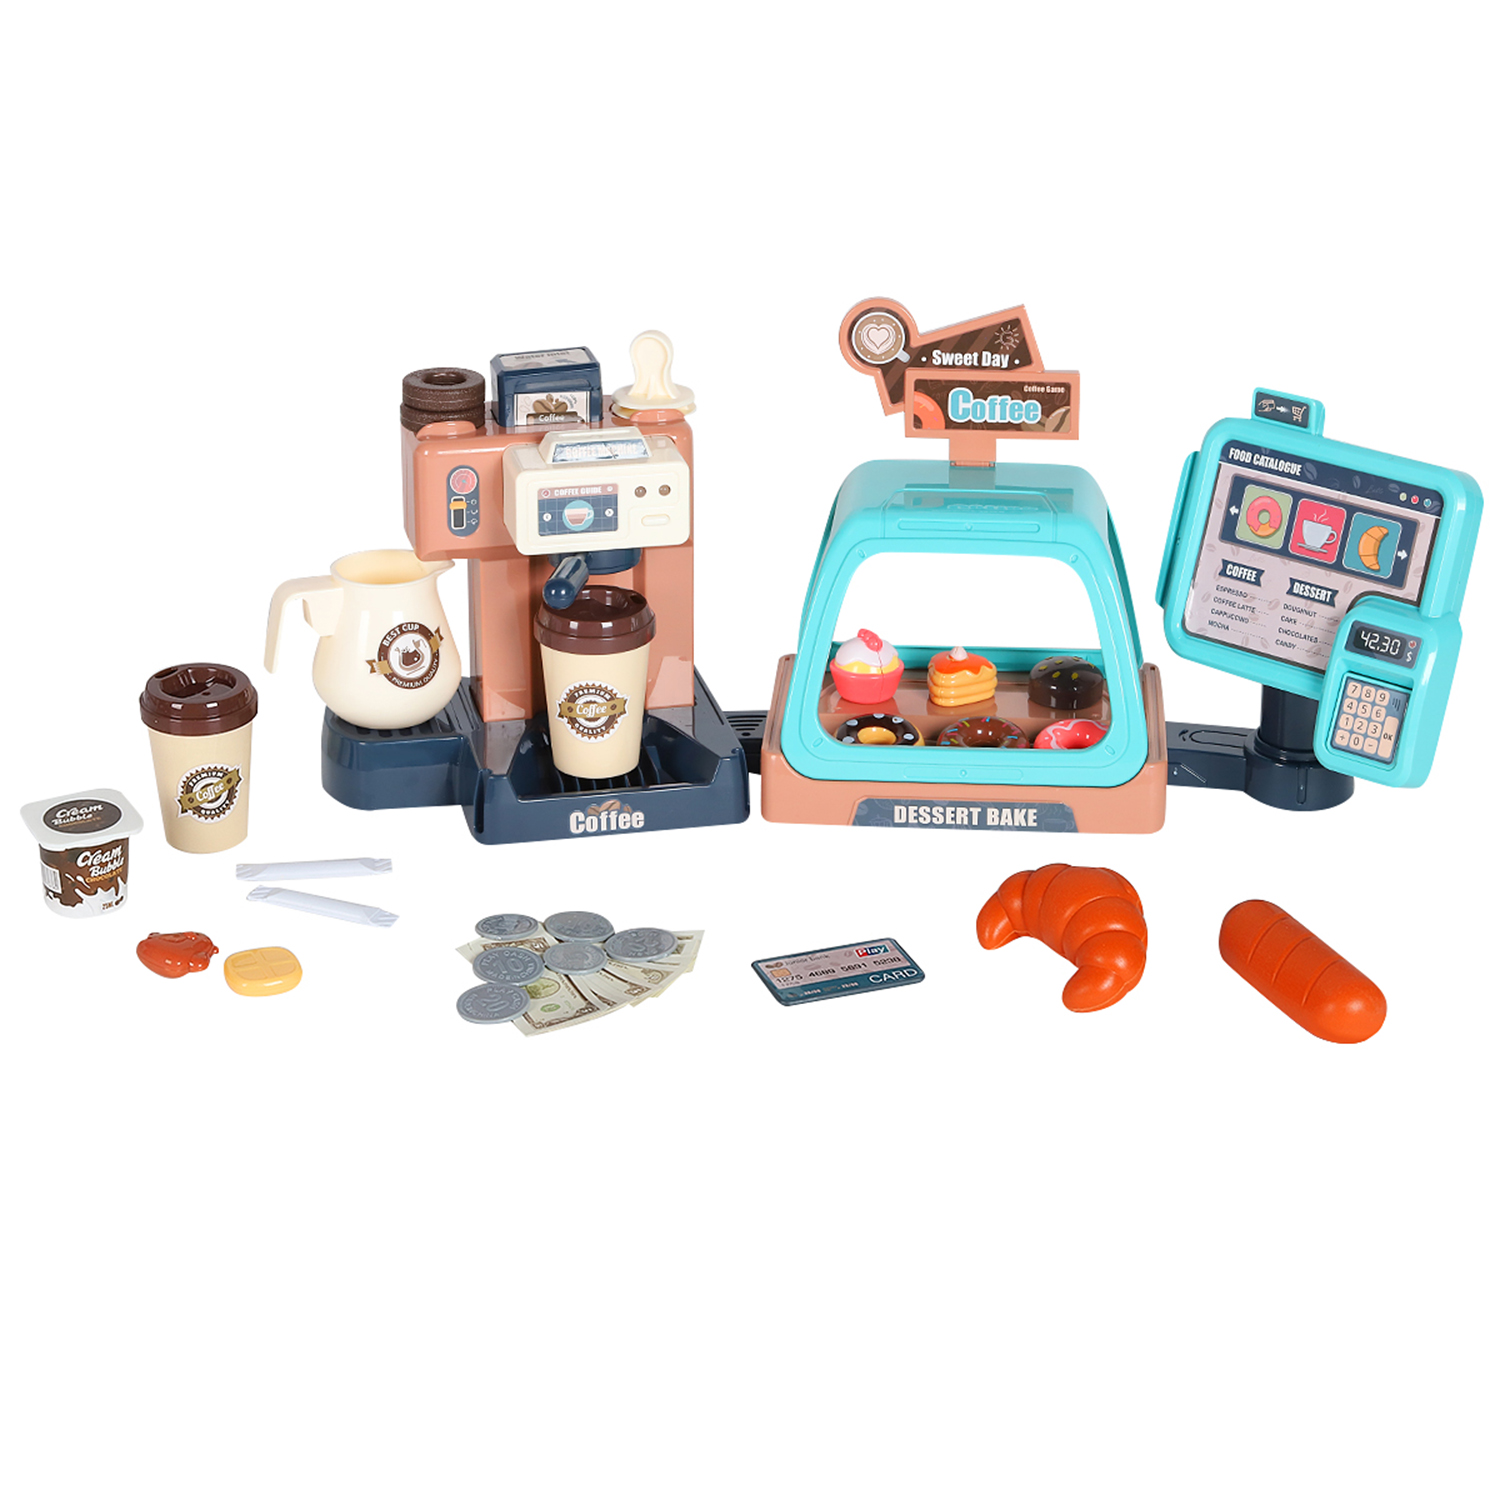 Игровой набор JIACHENG Супермаркет, игрушечная касса, кофемашина, продукты, JB0209124.